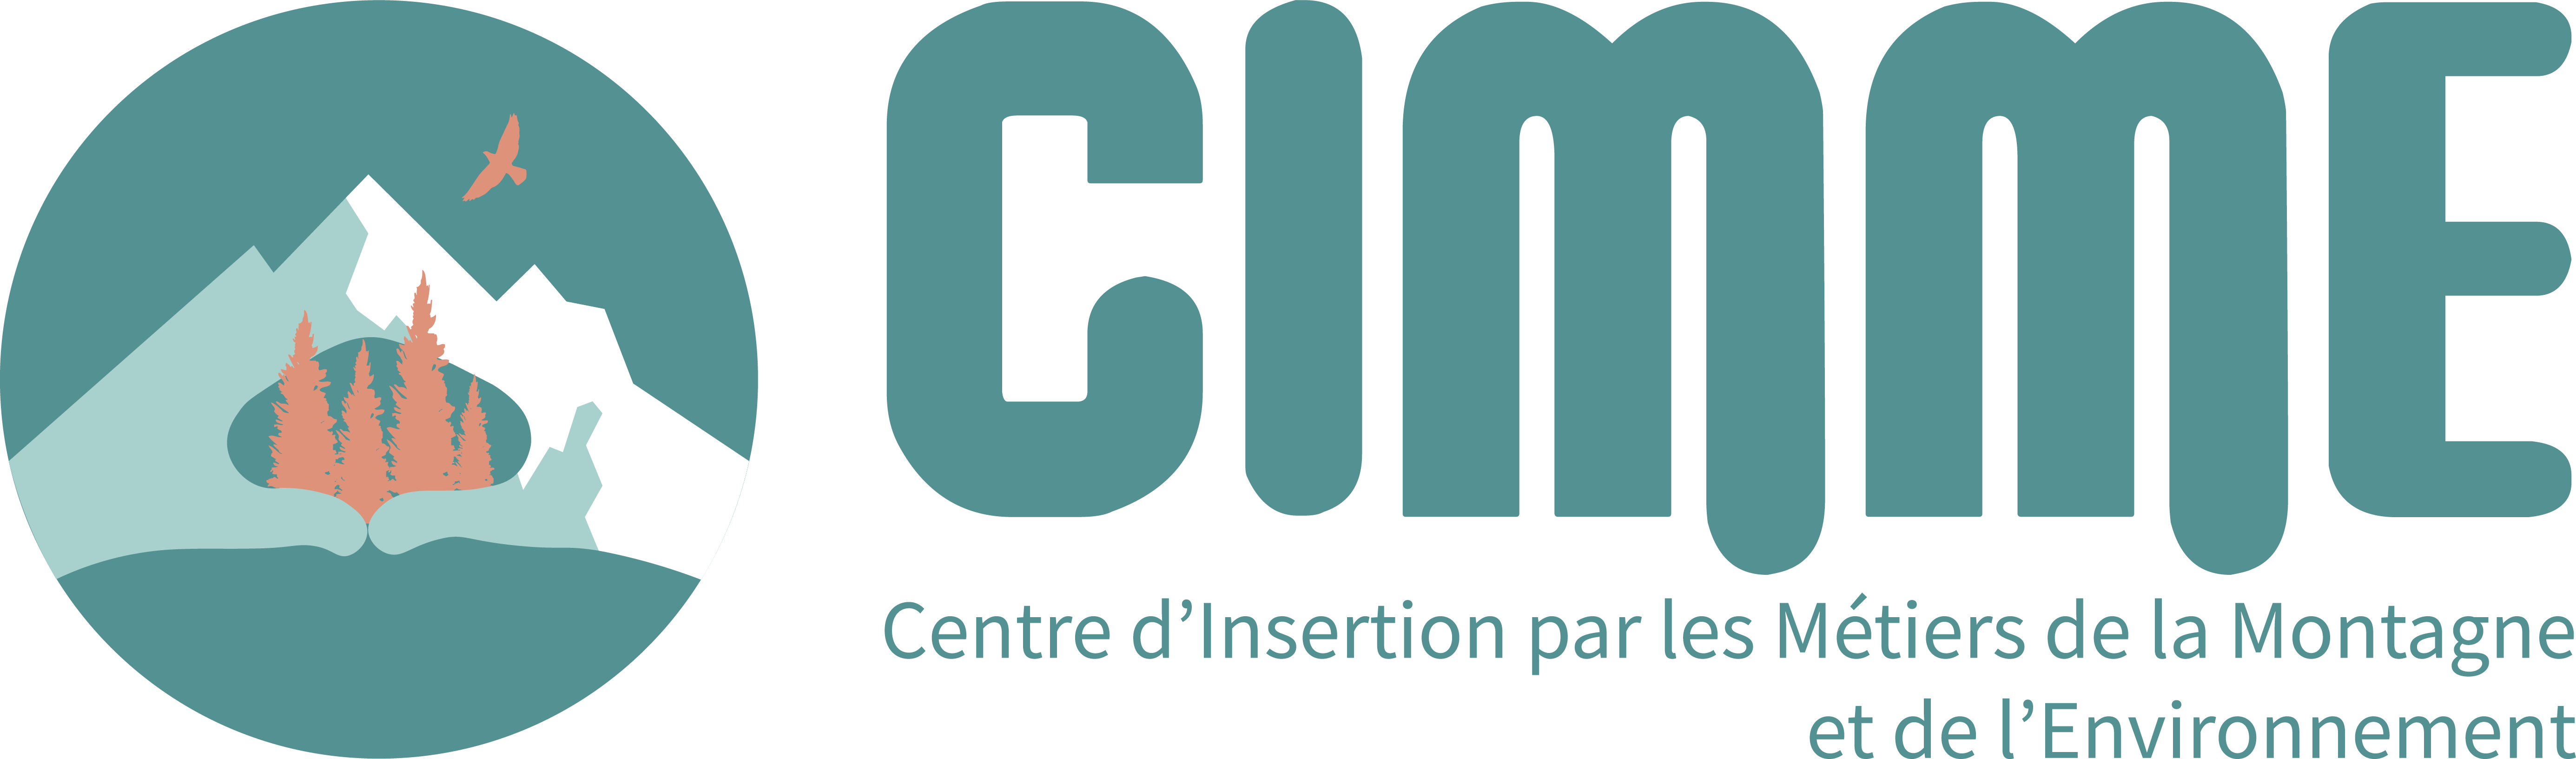 Logo CIMME